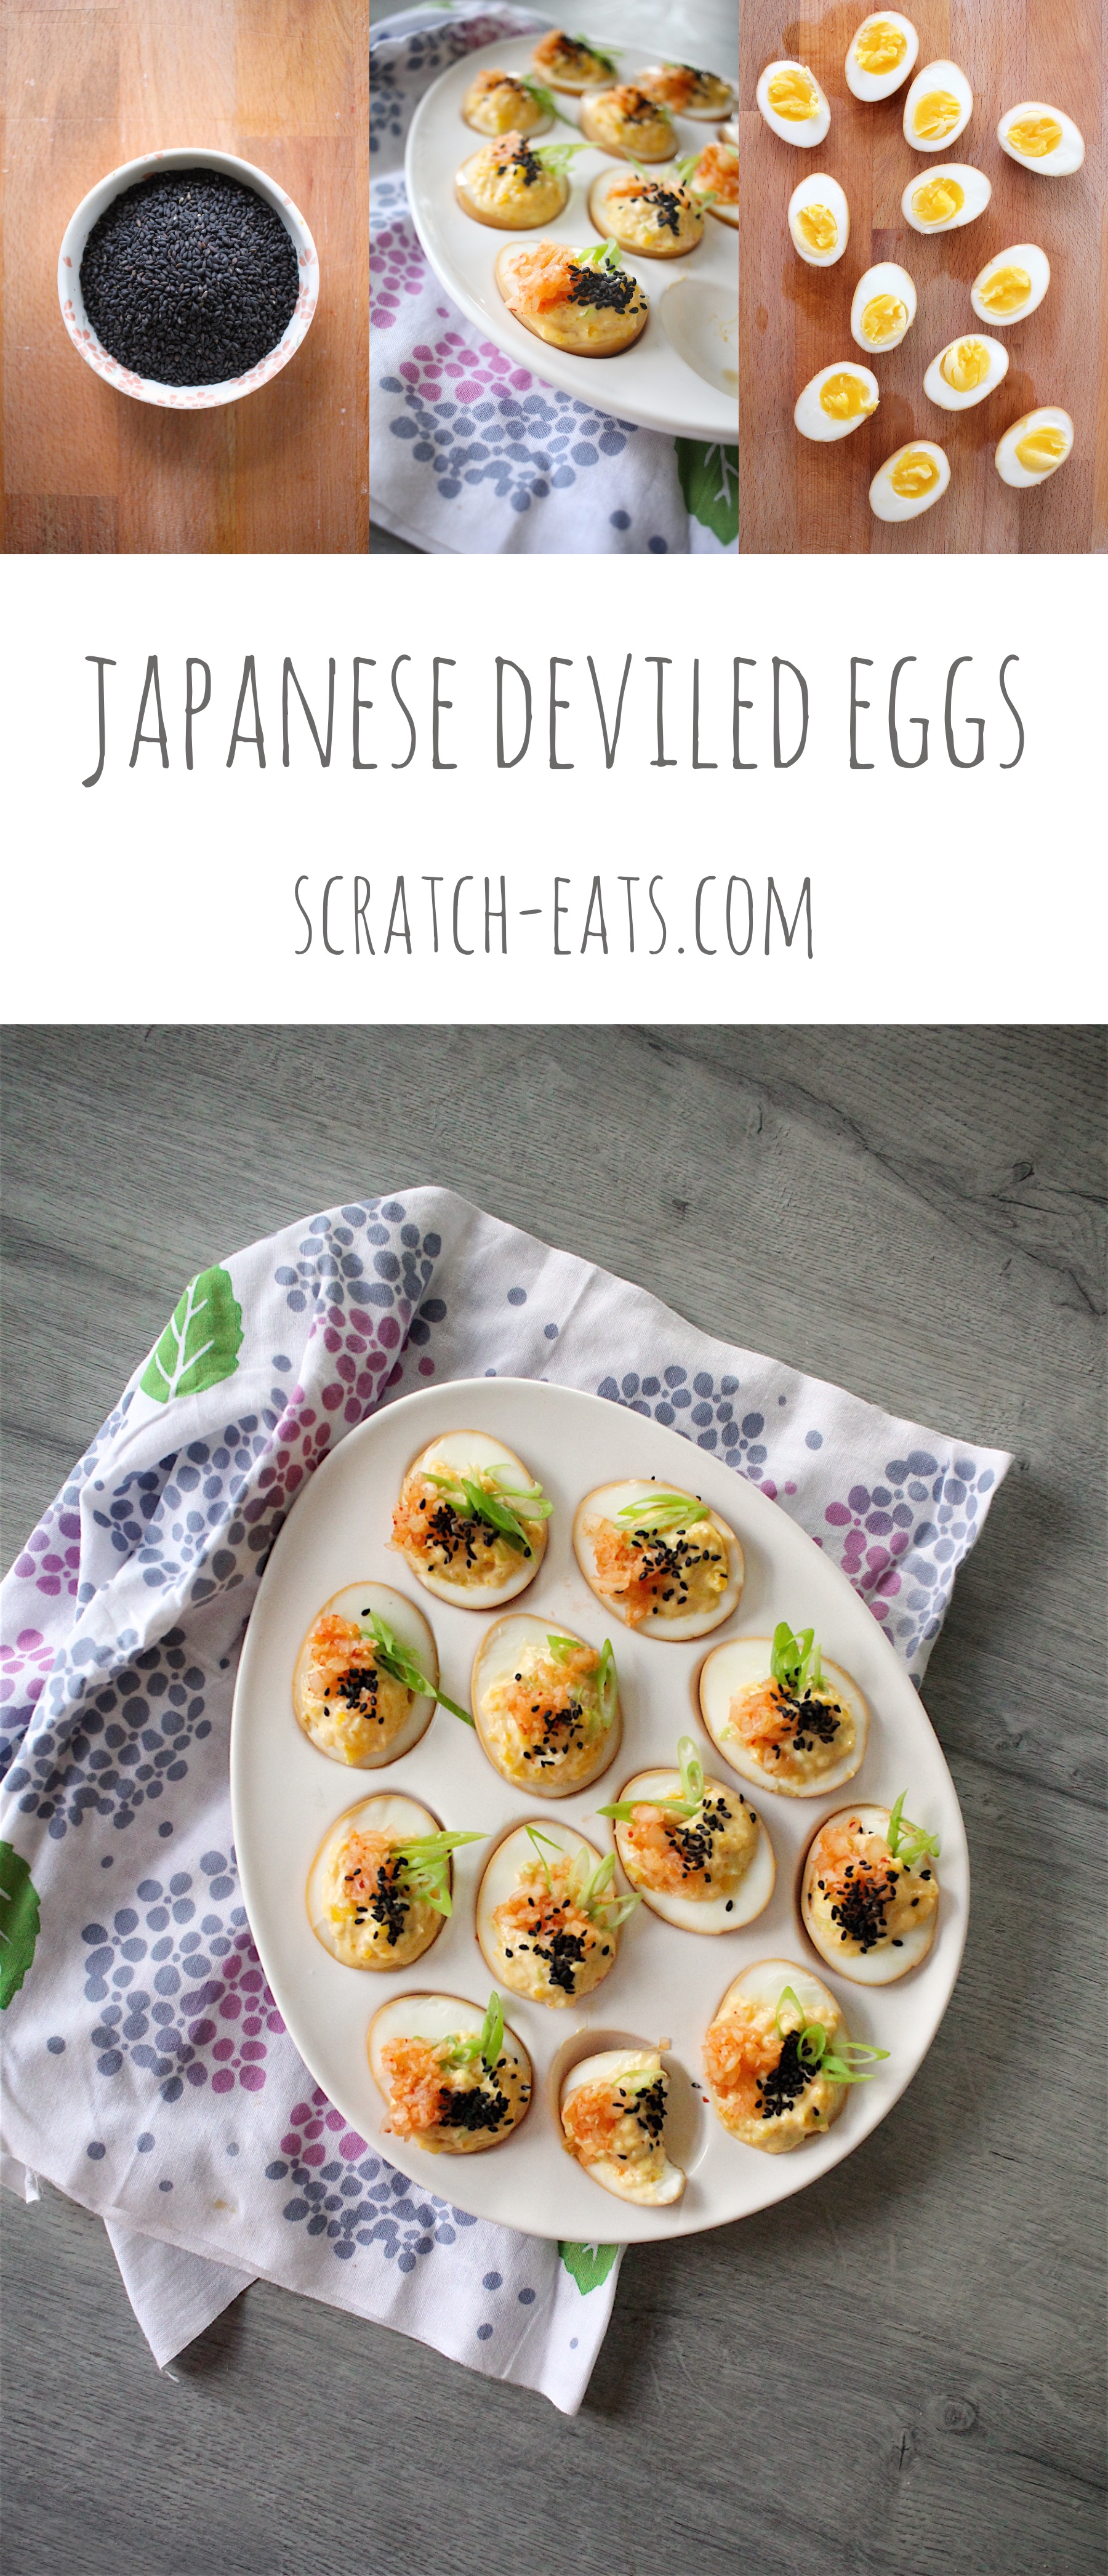 Japanese Deviled Eggs